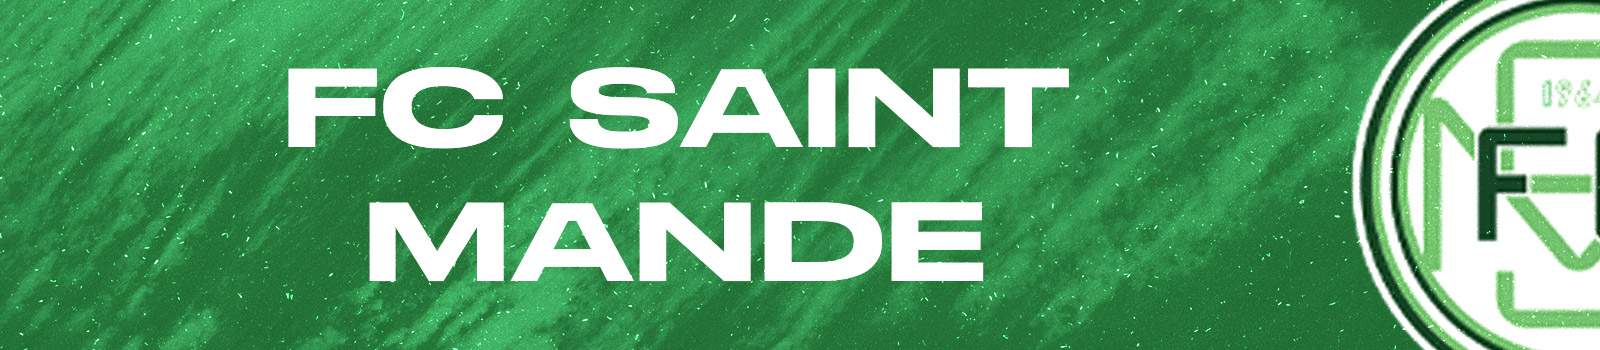 Saint Mande FC